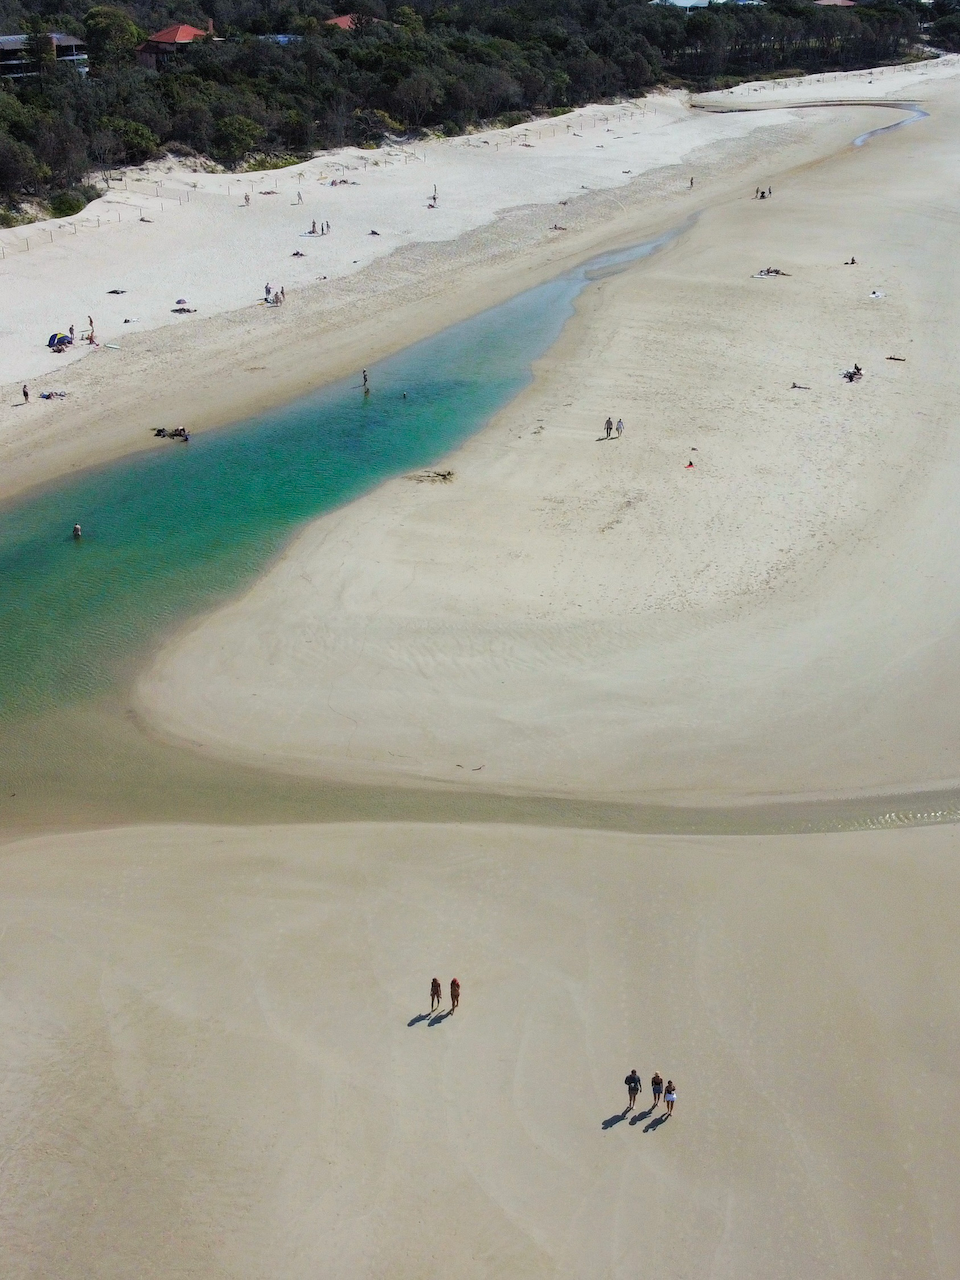 Piscines naturelles à marée basse - Clarkes Beach - Byron Bay - New South Wales - Australie